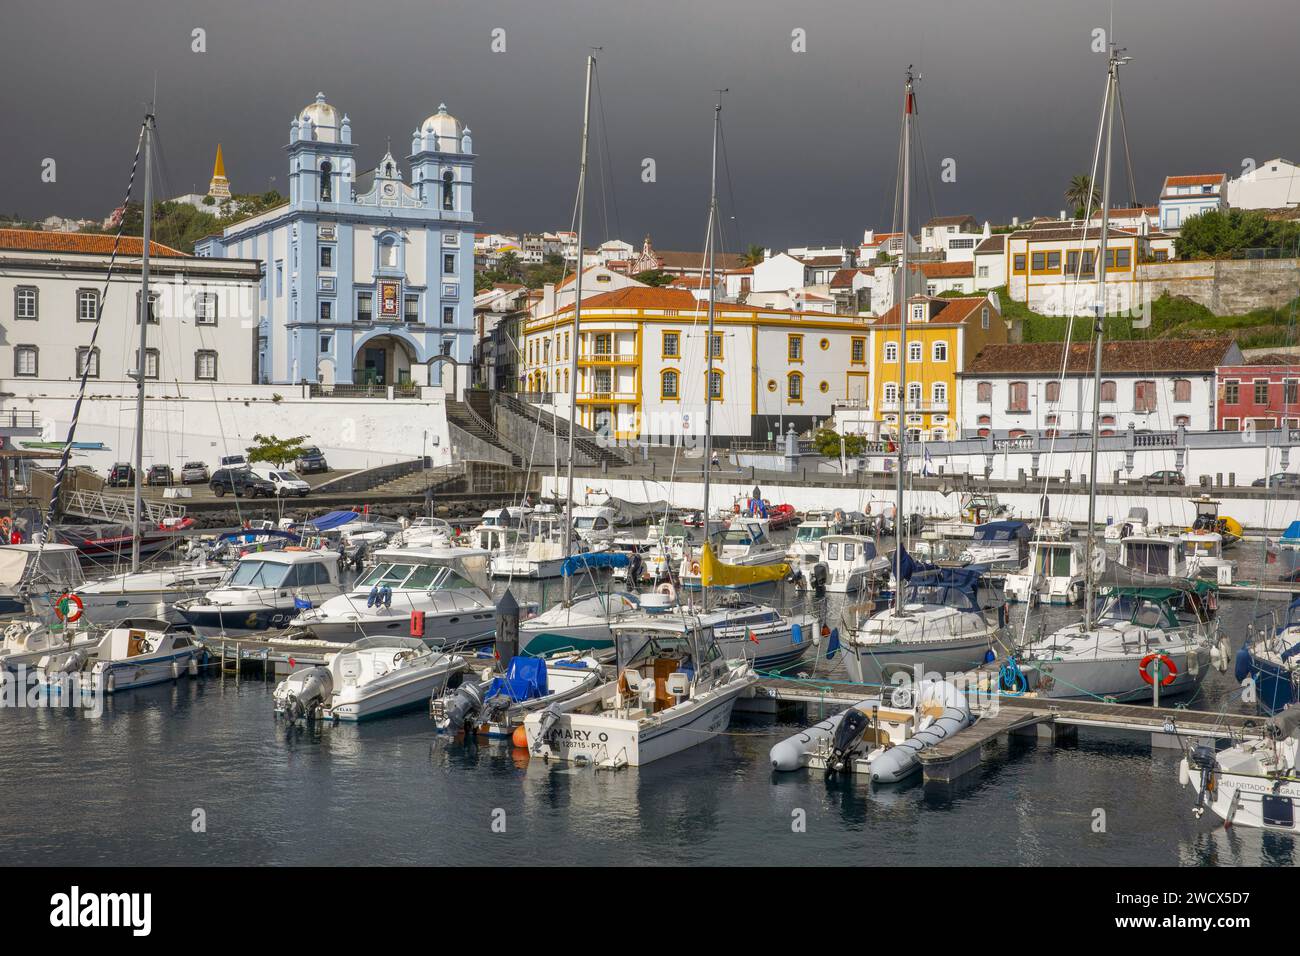 Portugal, archipel des Açores, île de Terceira, Angra do Heroismo, port accueillant des bateaux de plaisance avec l'église de la Miséricorde peinte en bleu azur et des bâtiments coloniaux colorés Banque D'Images